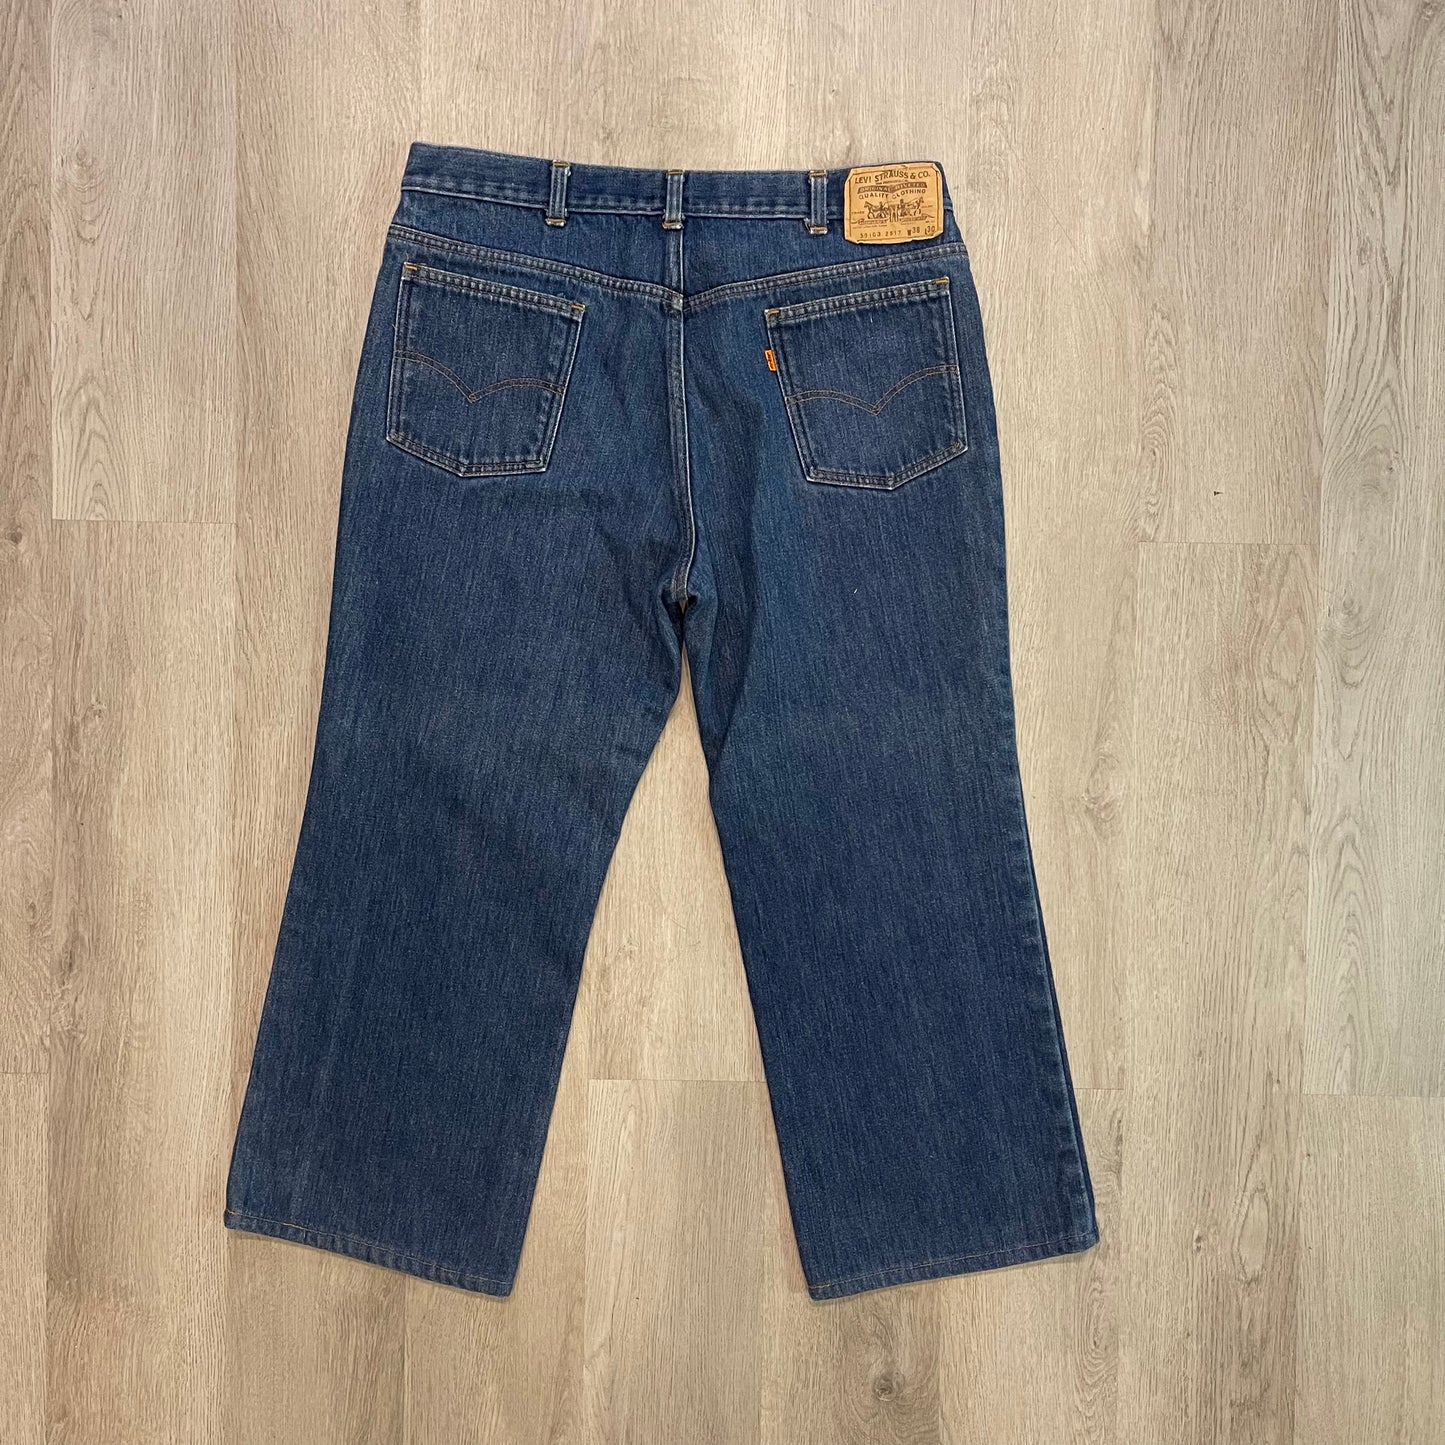 Vintage Levi’s Boot Cut Jeans